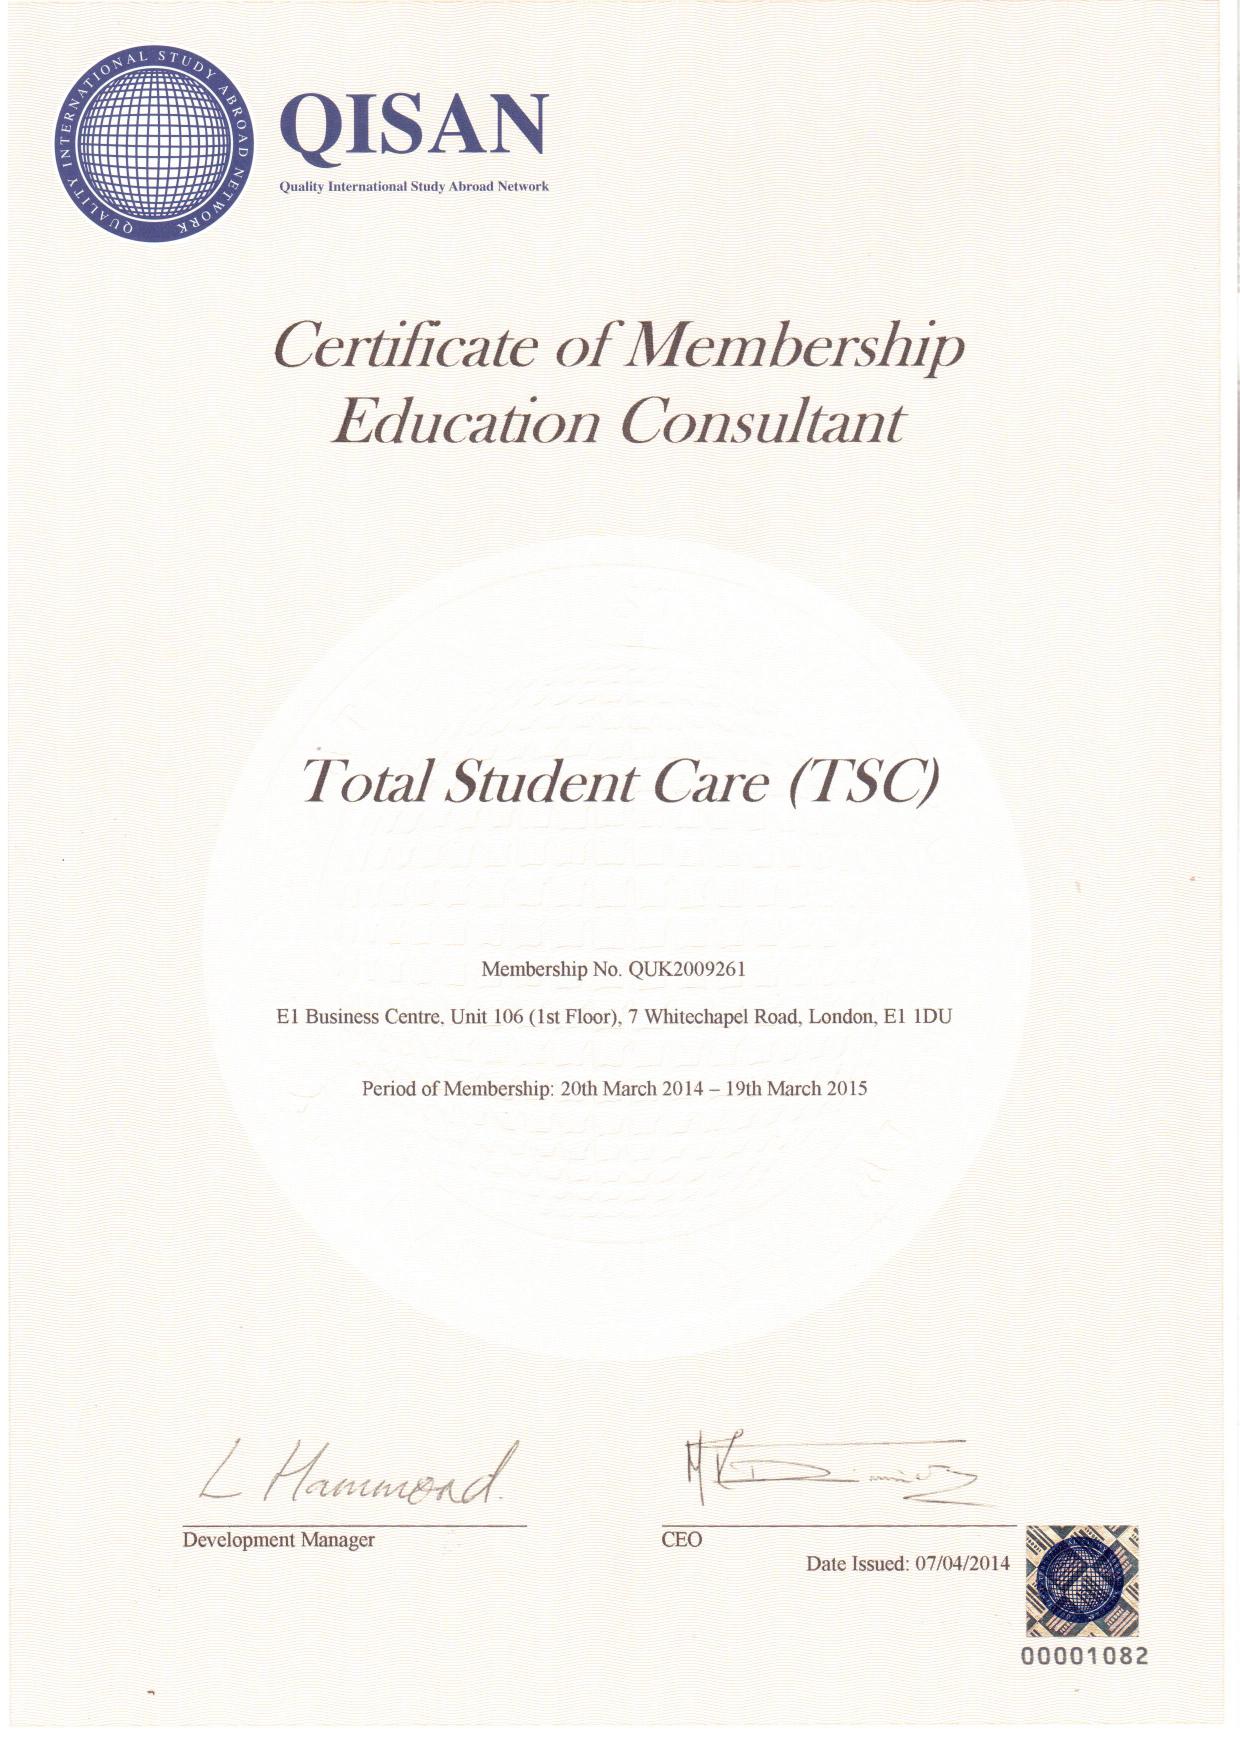 QISAN Membership Certificate